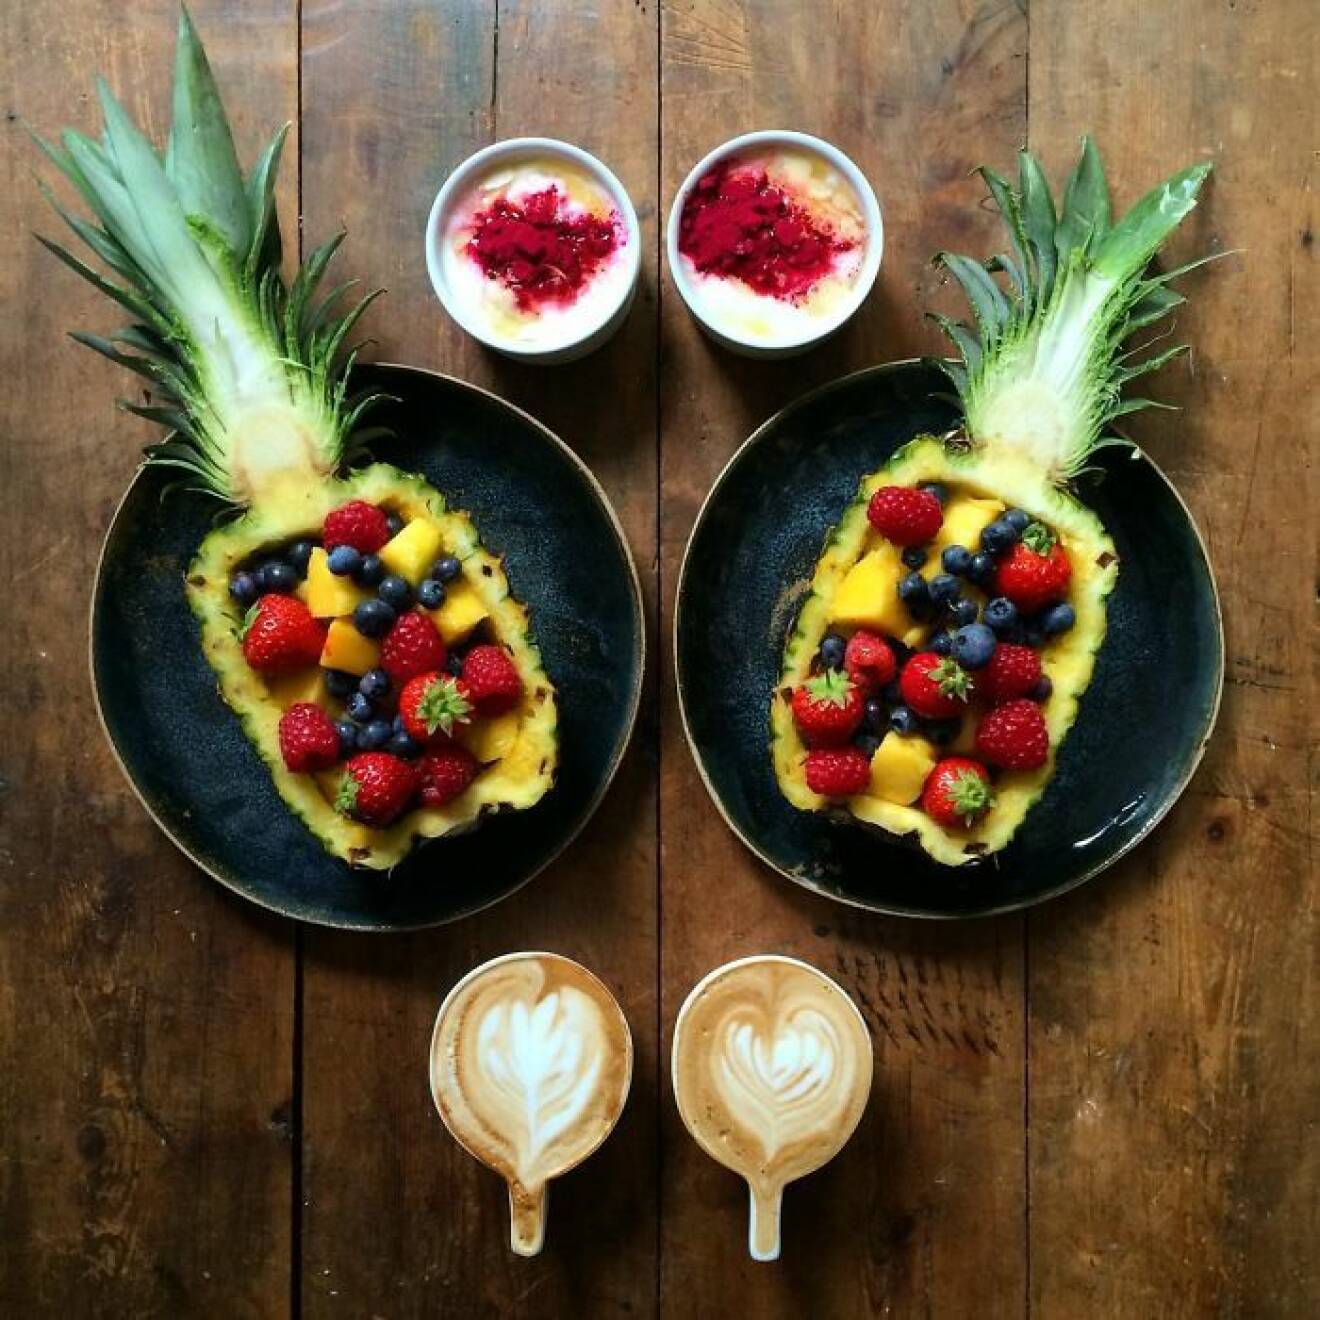 13. symmetry-breakfast-food-photography-michael-zee-62__700